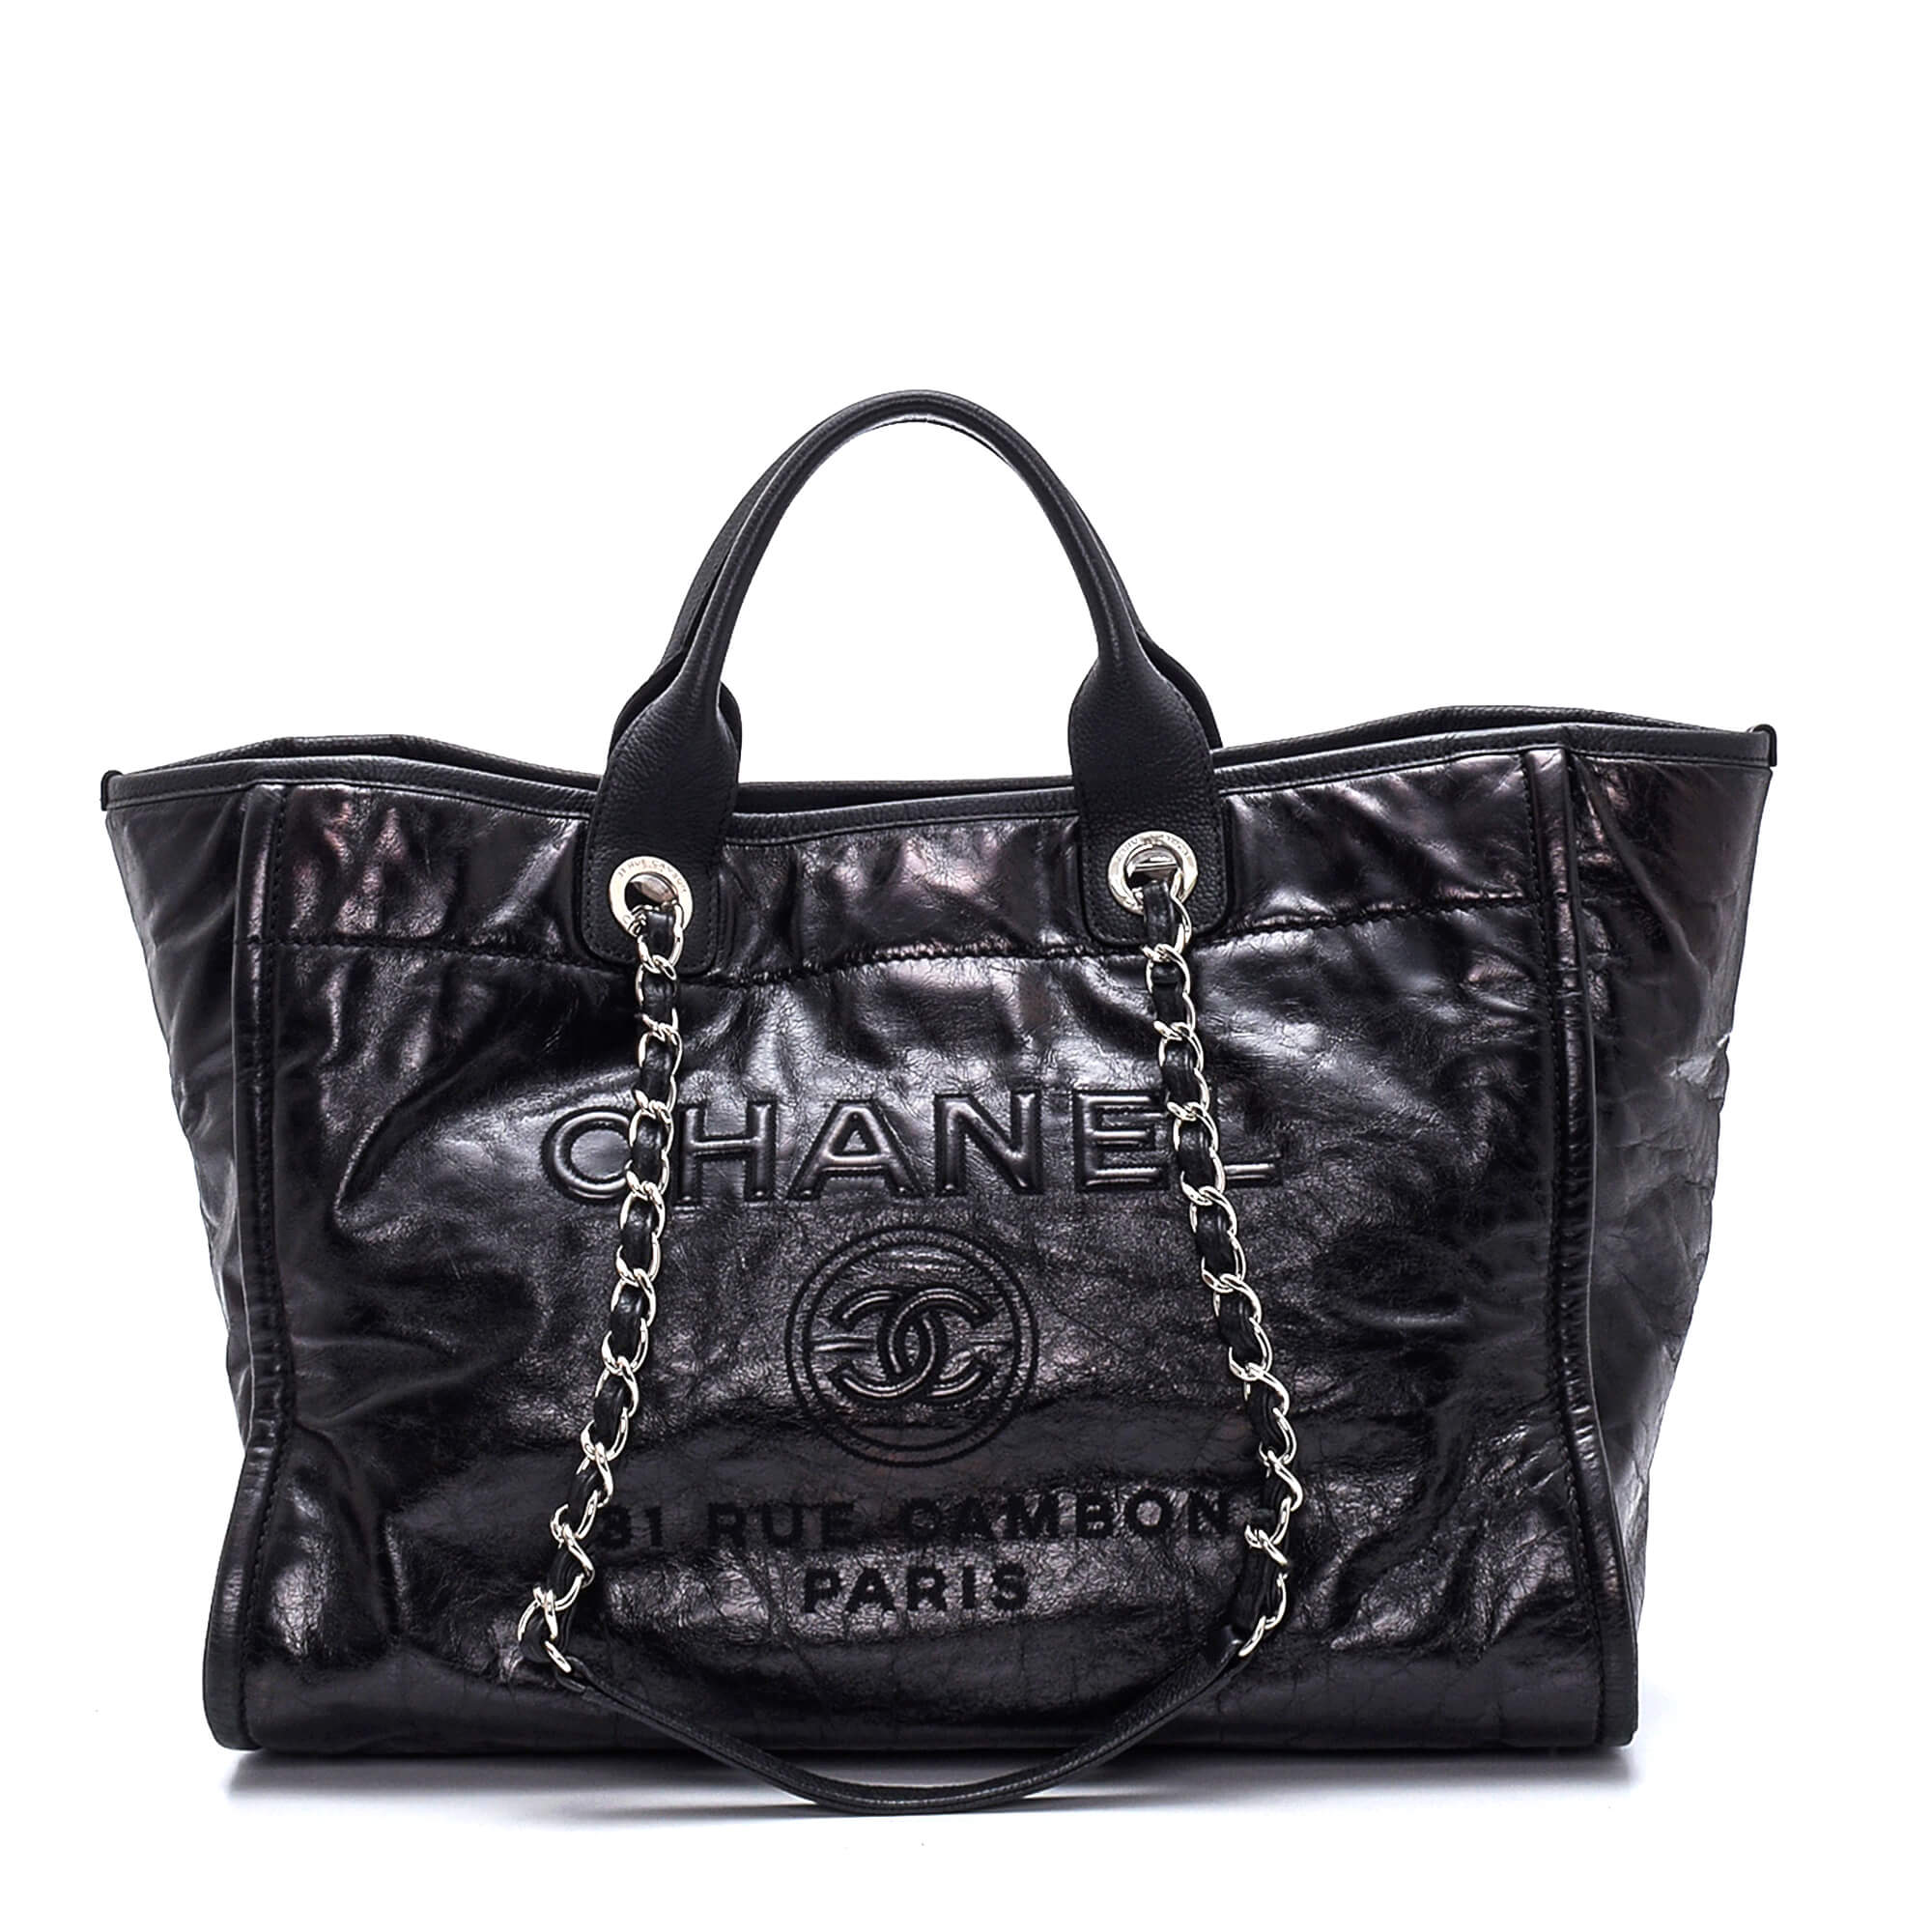 Chanel - Black Glazed Calfskin Leather Large Deauville Bag